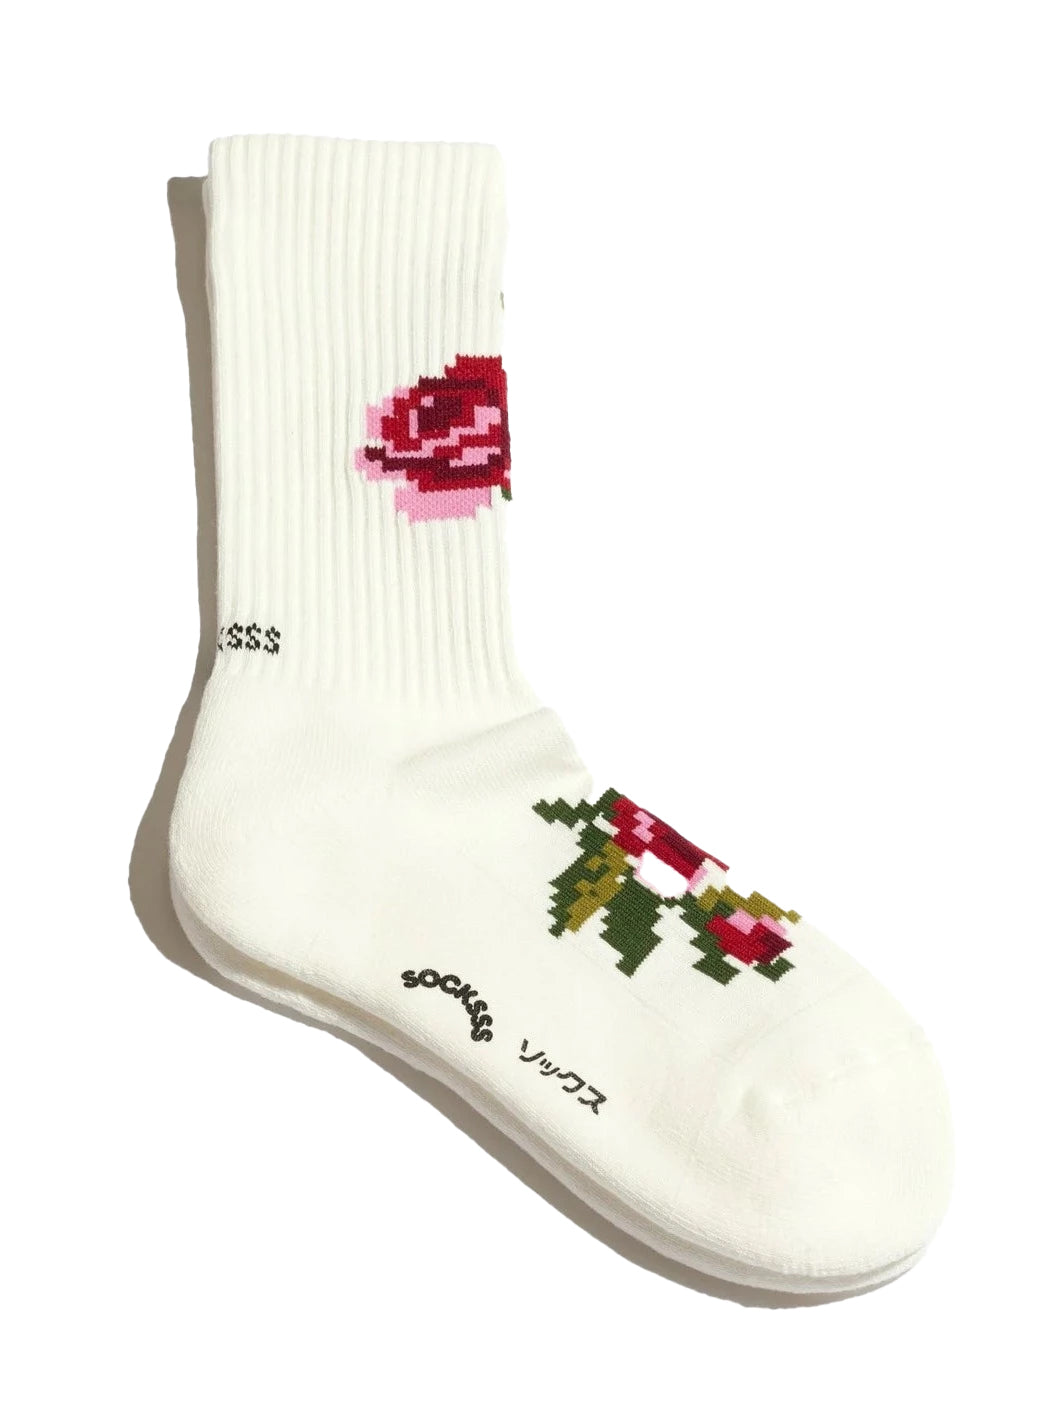 Rosebud socks